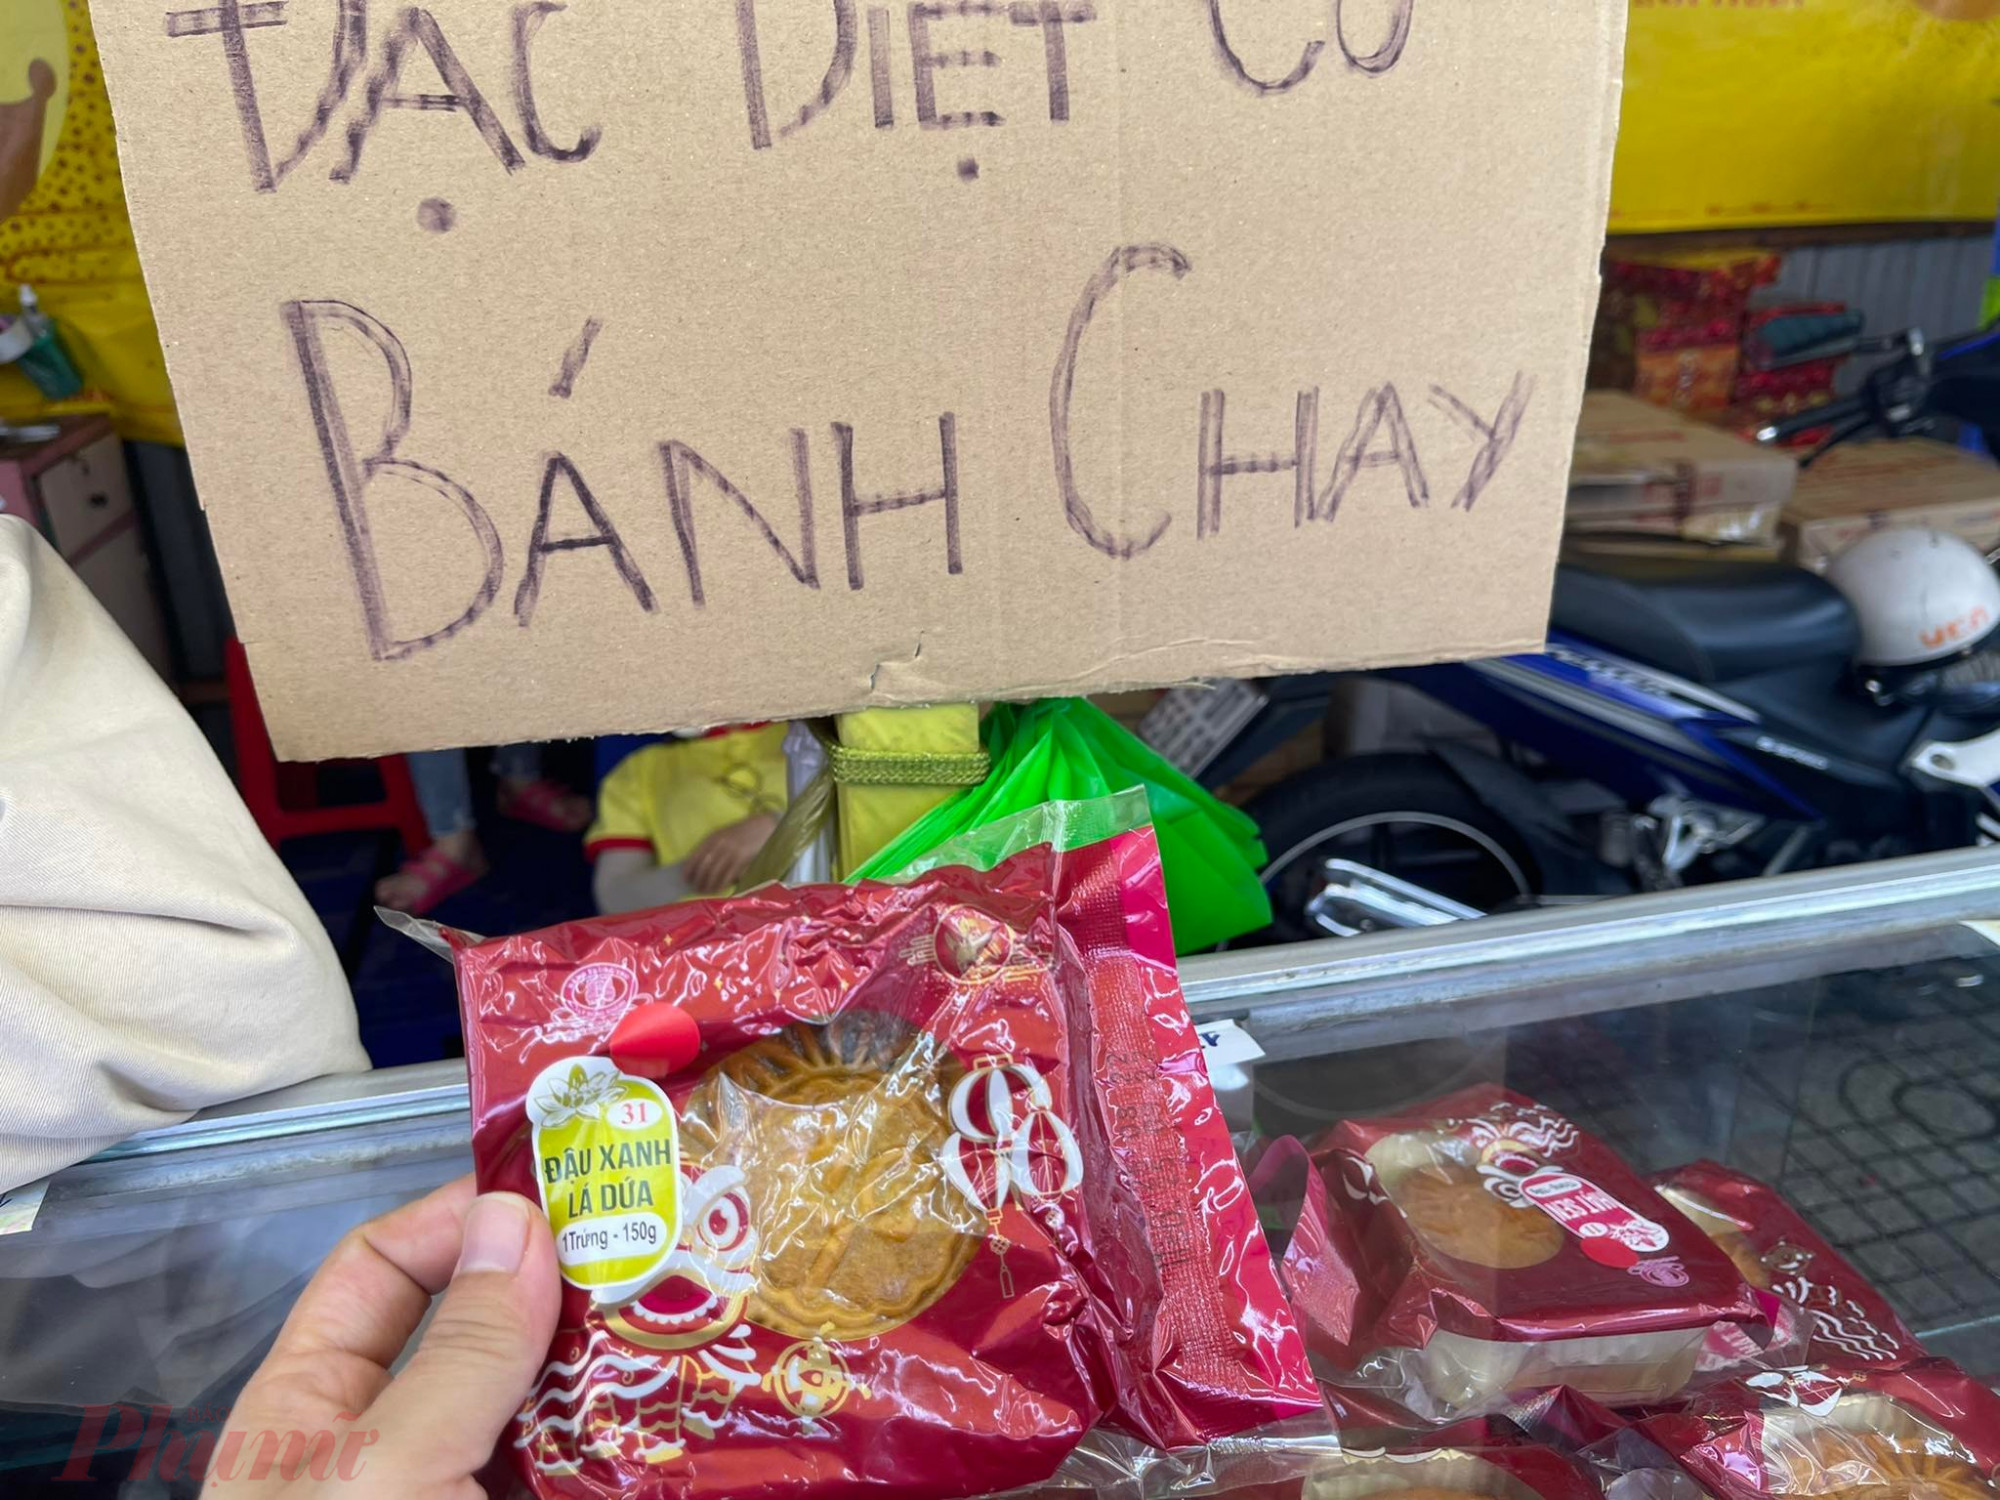 Bánh trung thu chay được bày bán ở gian hàng trên đường Nguyễn Thái Sơn (quận Gò Vấp, TP.HCM) nhưng chỉ còn khoảng 1 tuần nữa hết hạn, người bán xổ hàng khách mua 1 được tặng 4 cái nhưng ít khách ghế mua.